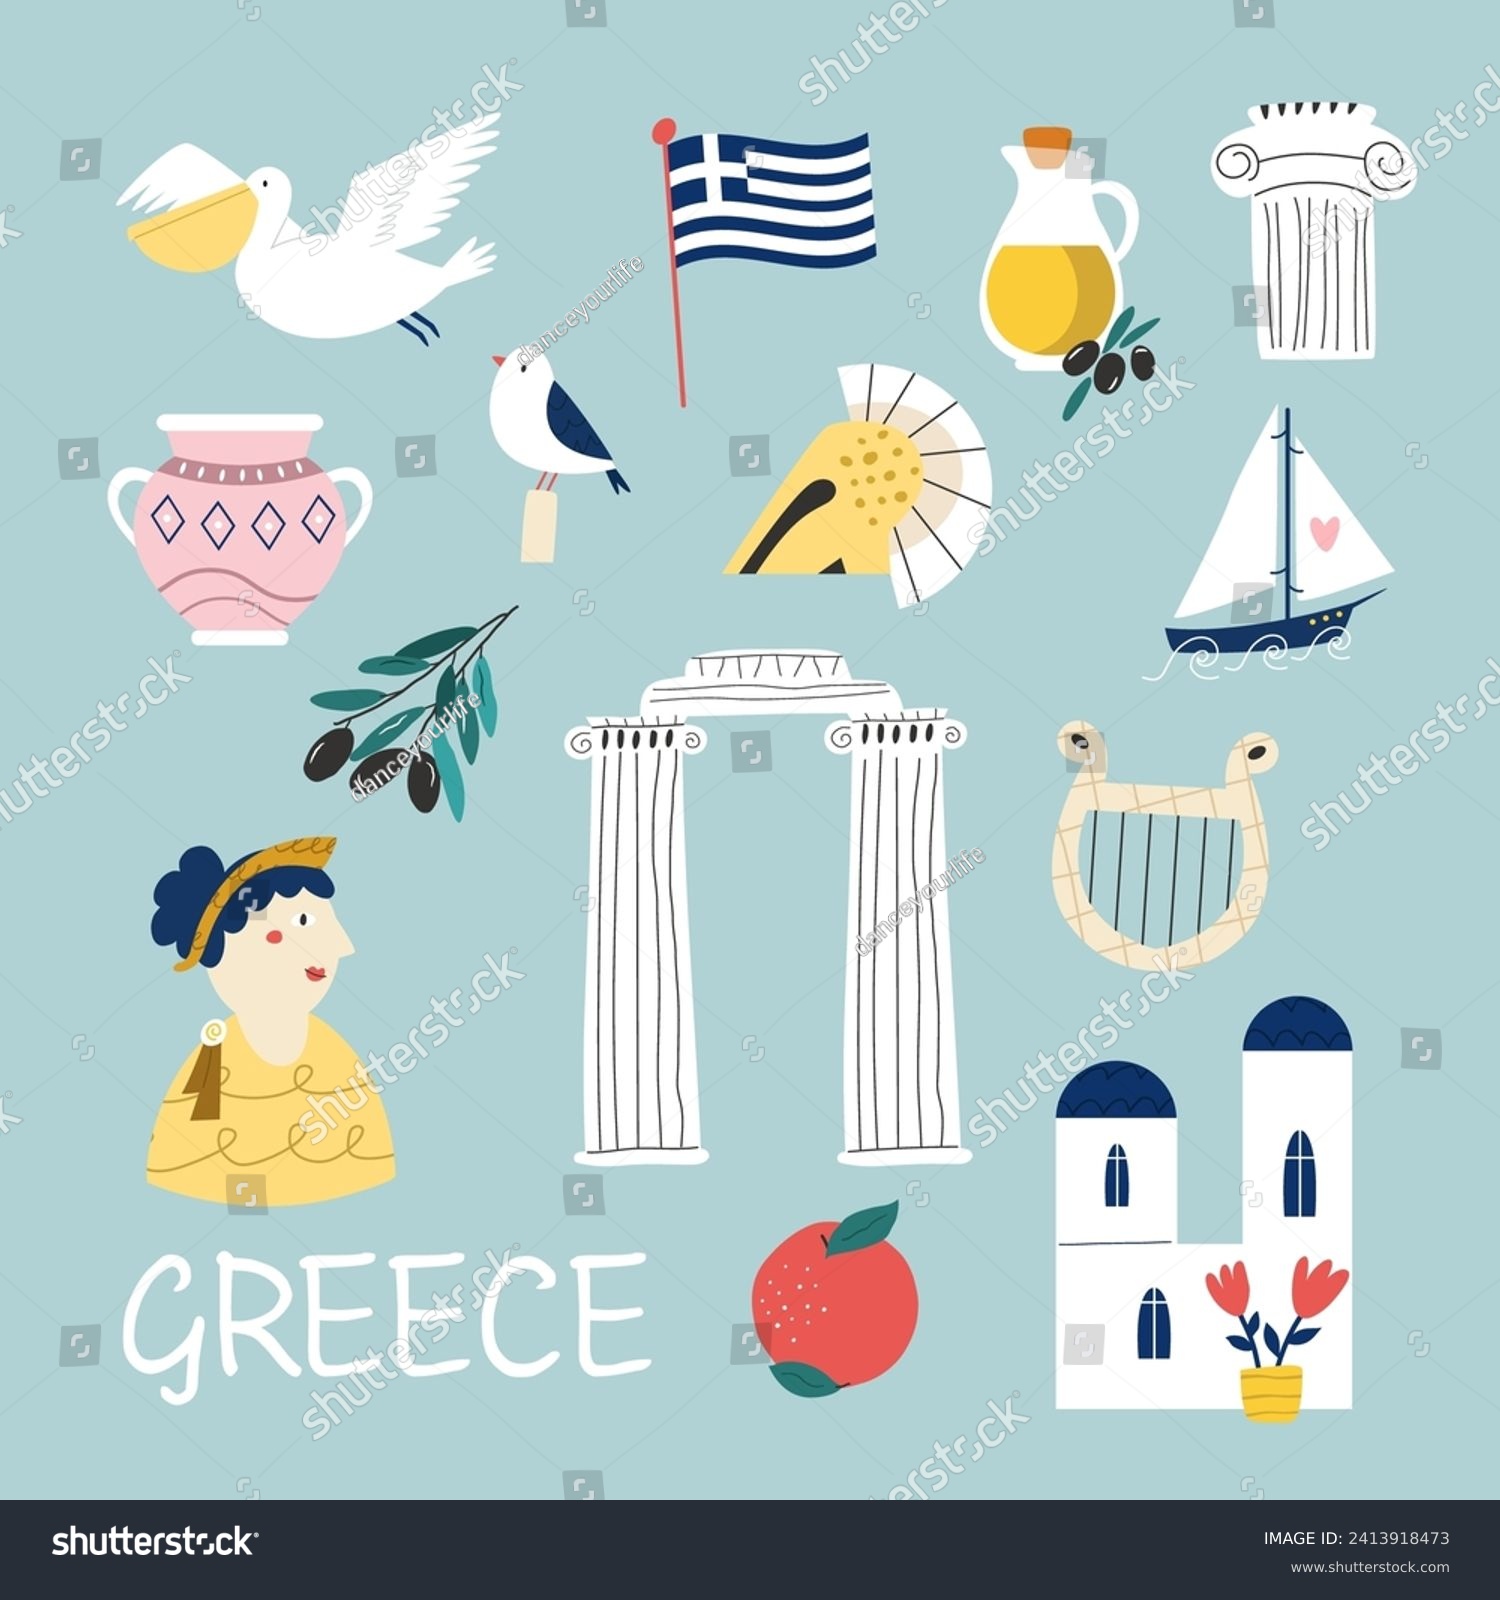 SVG of Colorful image, frame art with landmarks, symbols of Greece. Vector illustration, good for posters, frame art, travel leaflets, magazines, souvenirs svg